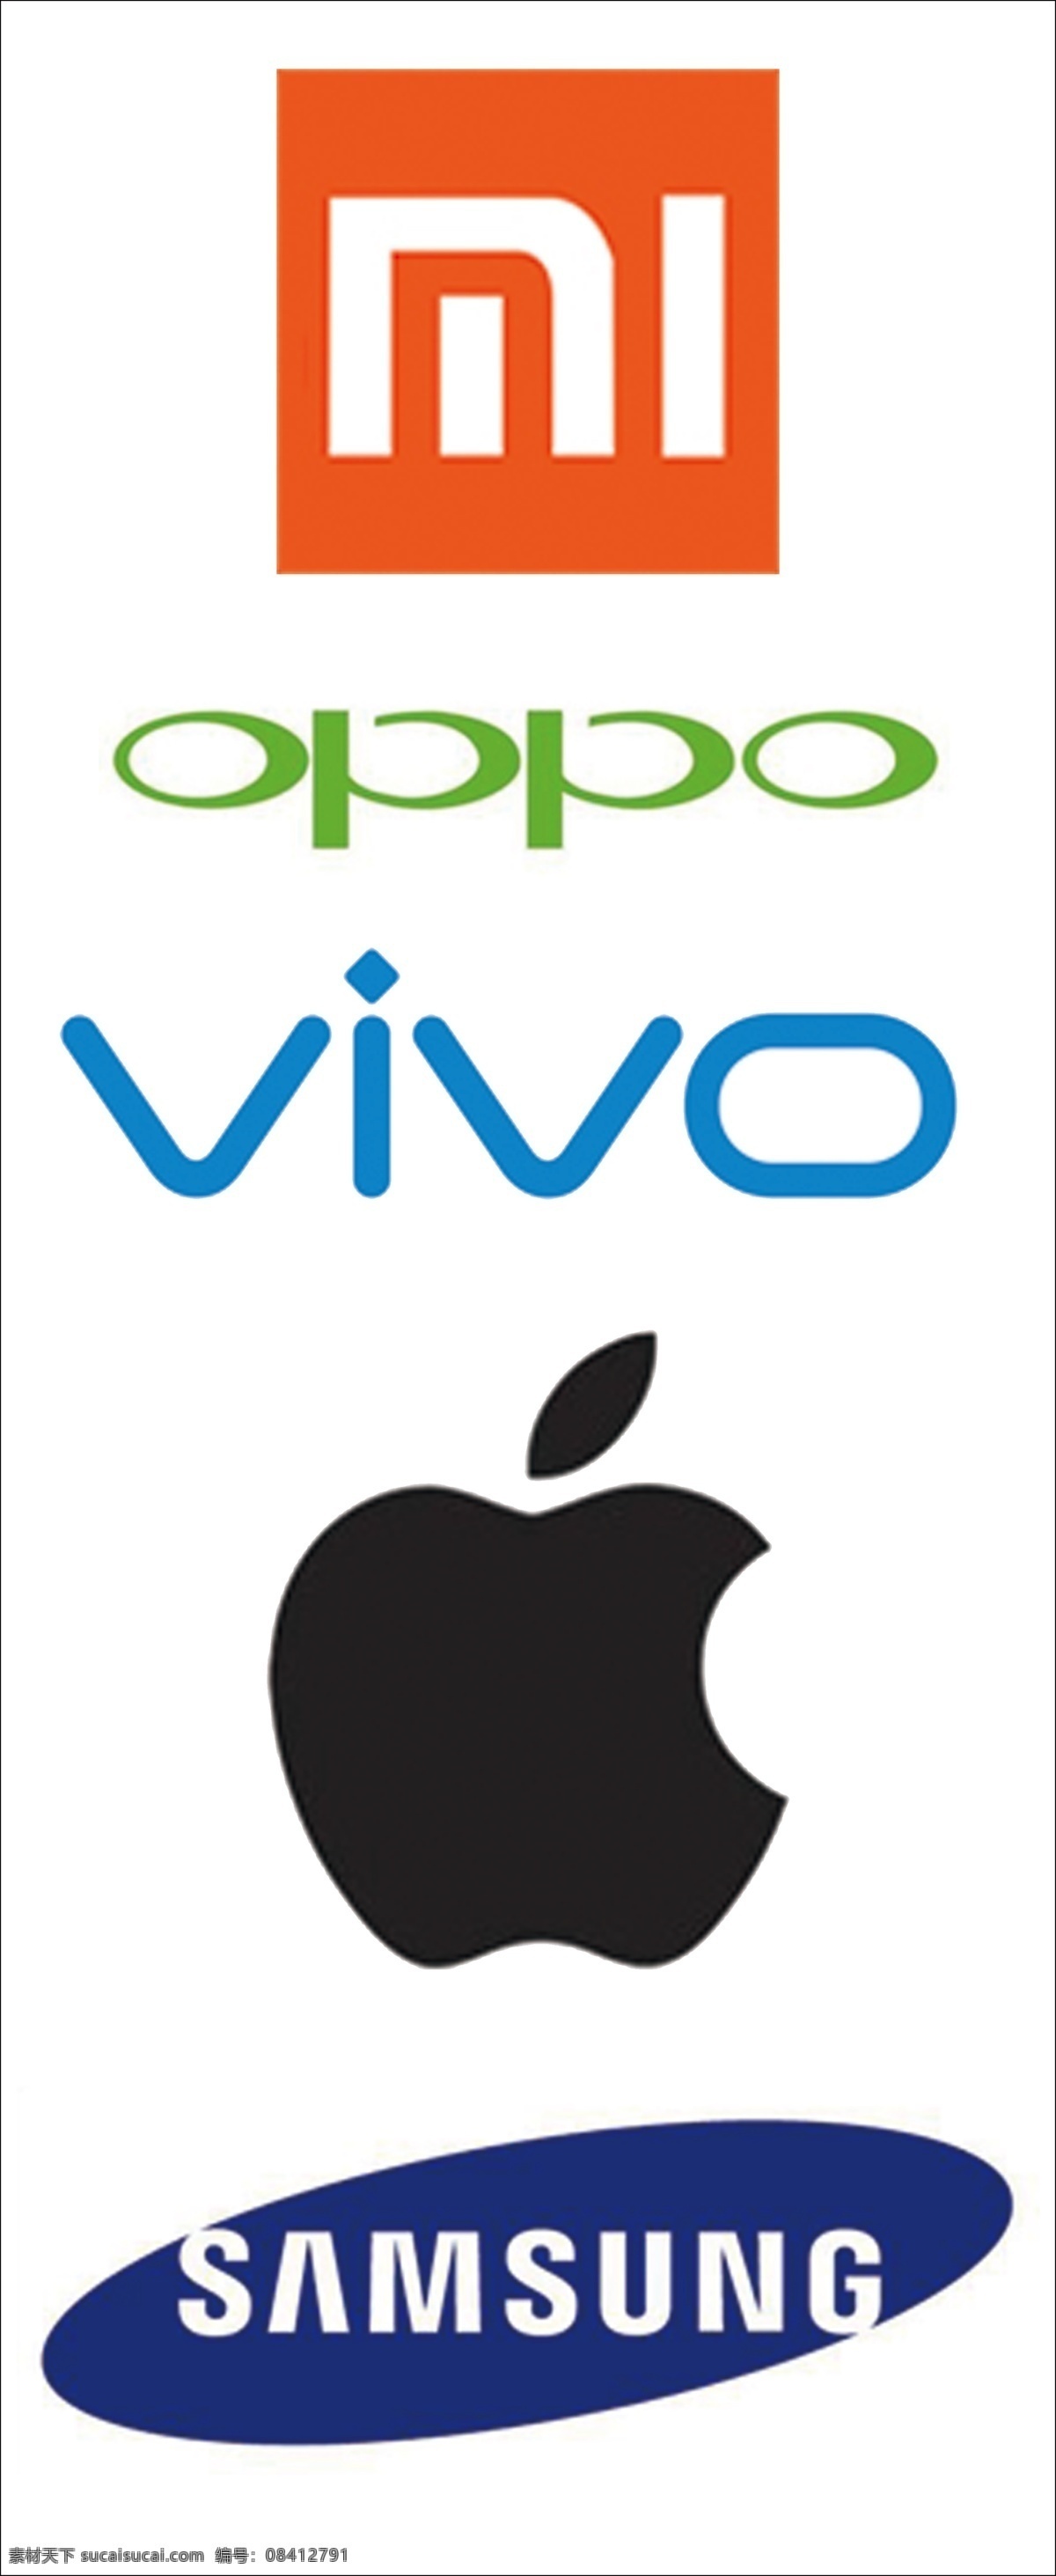 手机品牌标识 三星 矢量图 小米 oppo vivo 苹果矢量图 分层